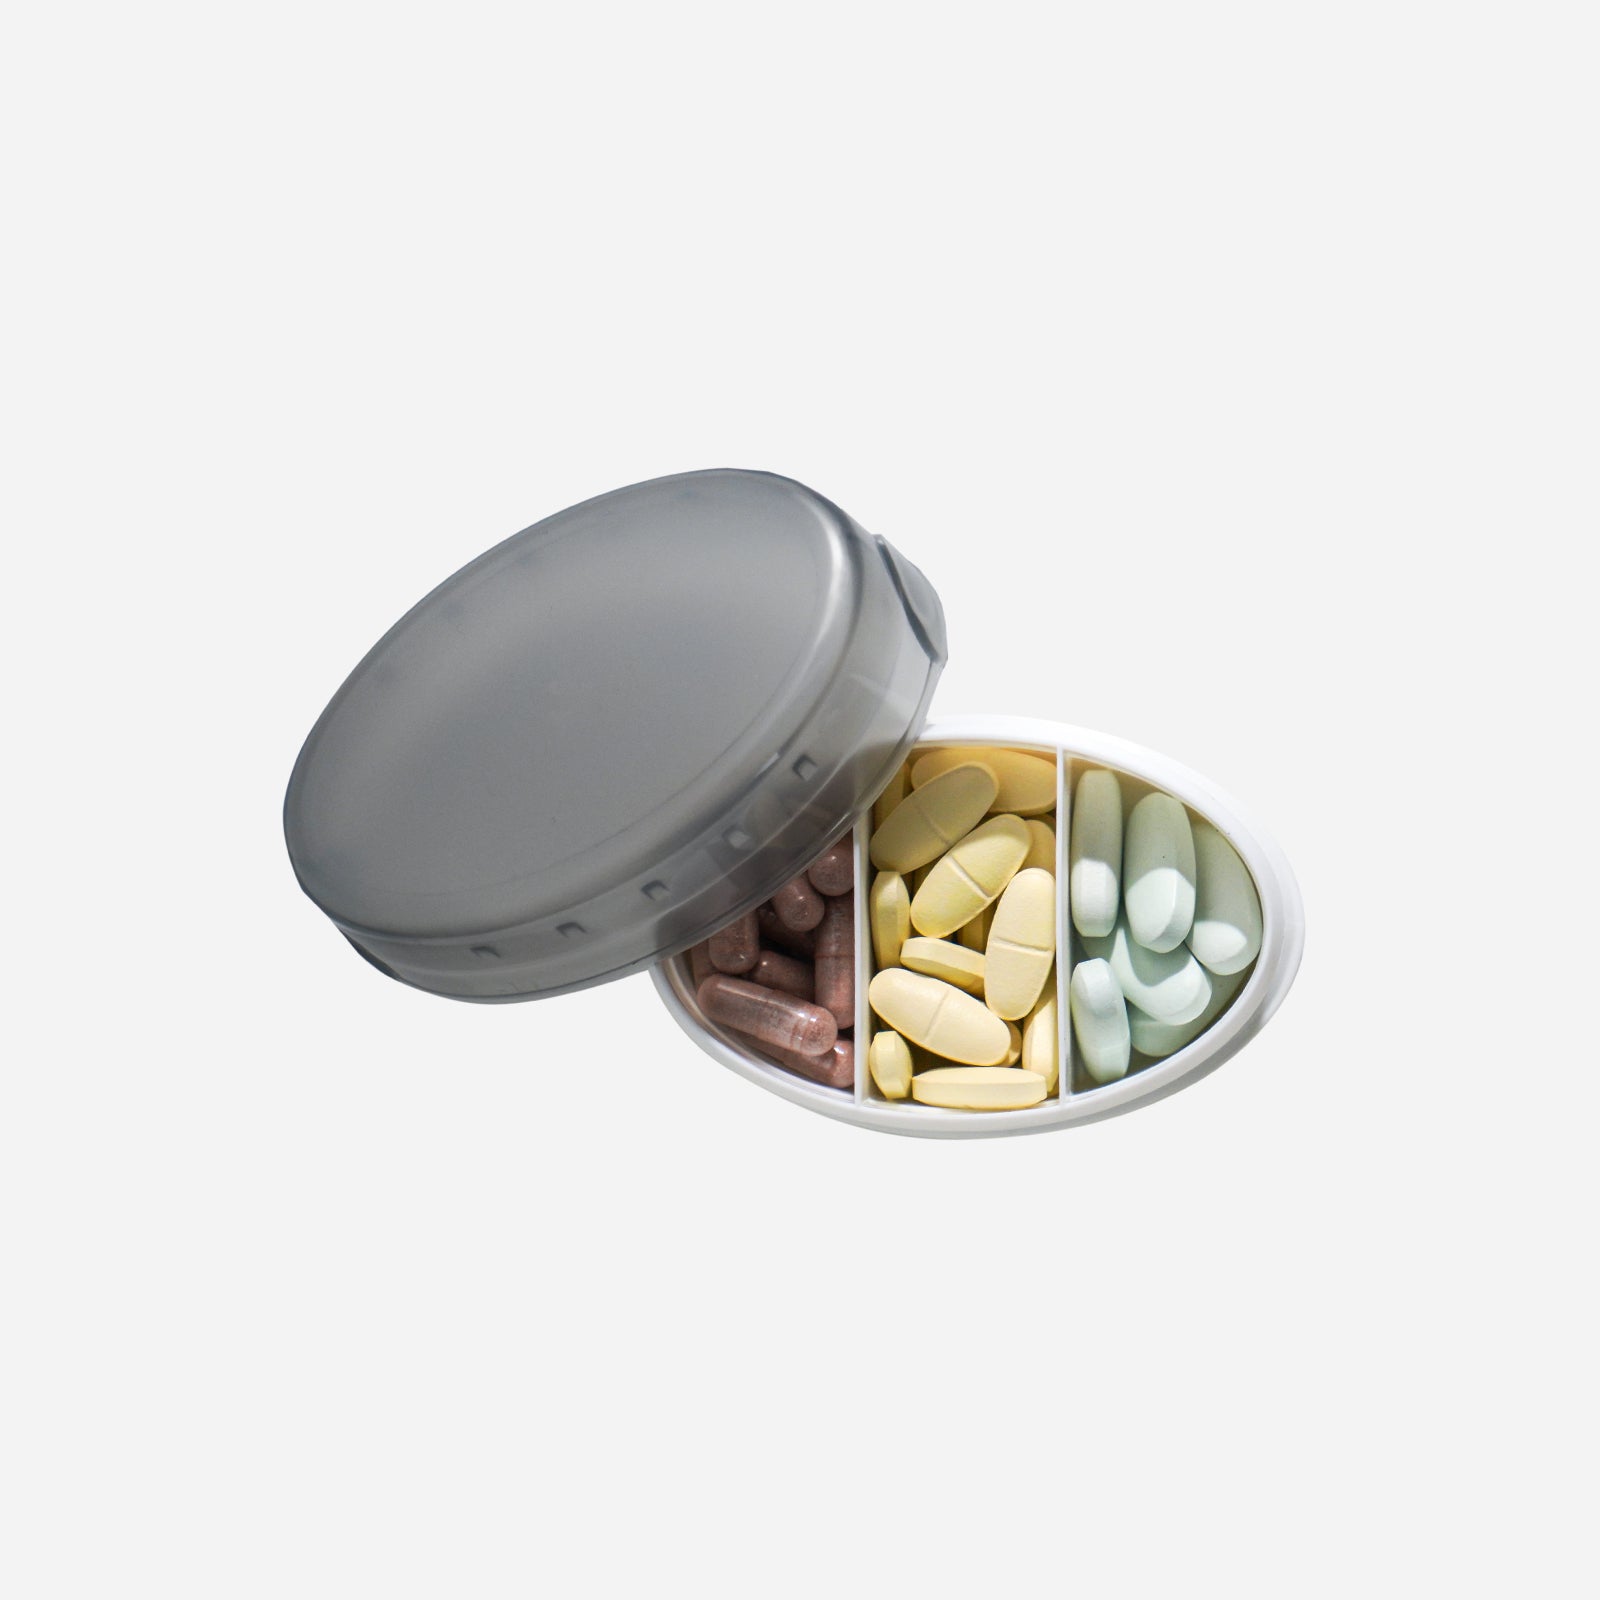 3 Compartments Pill Box